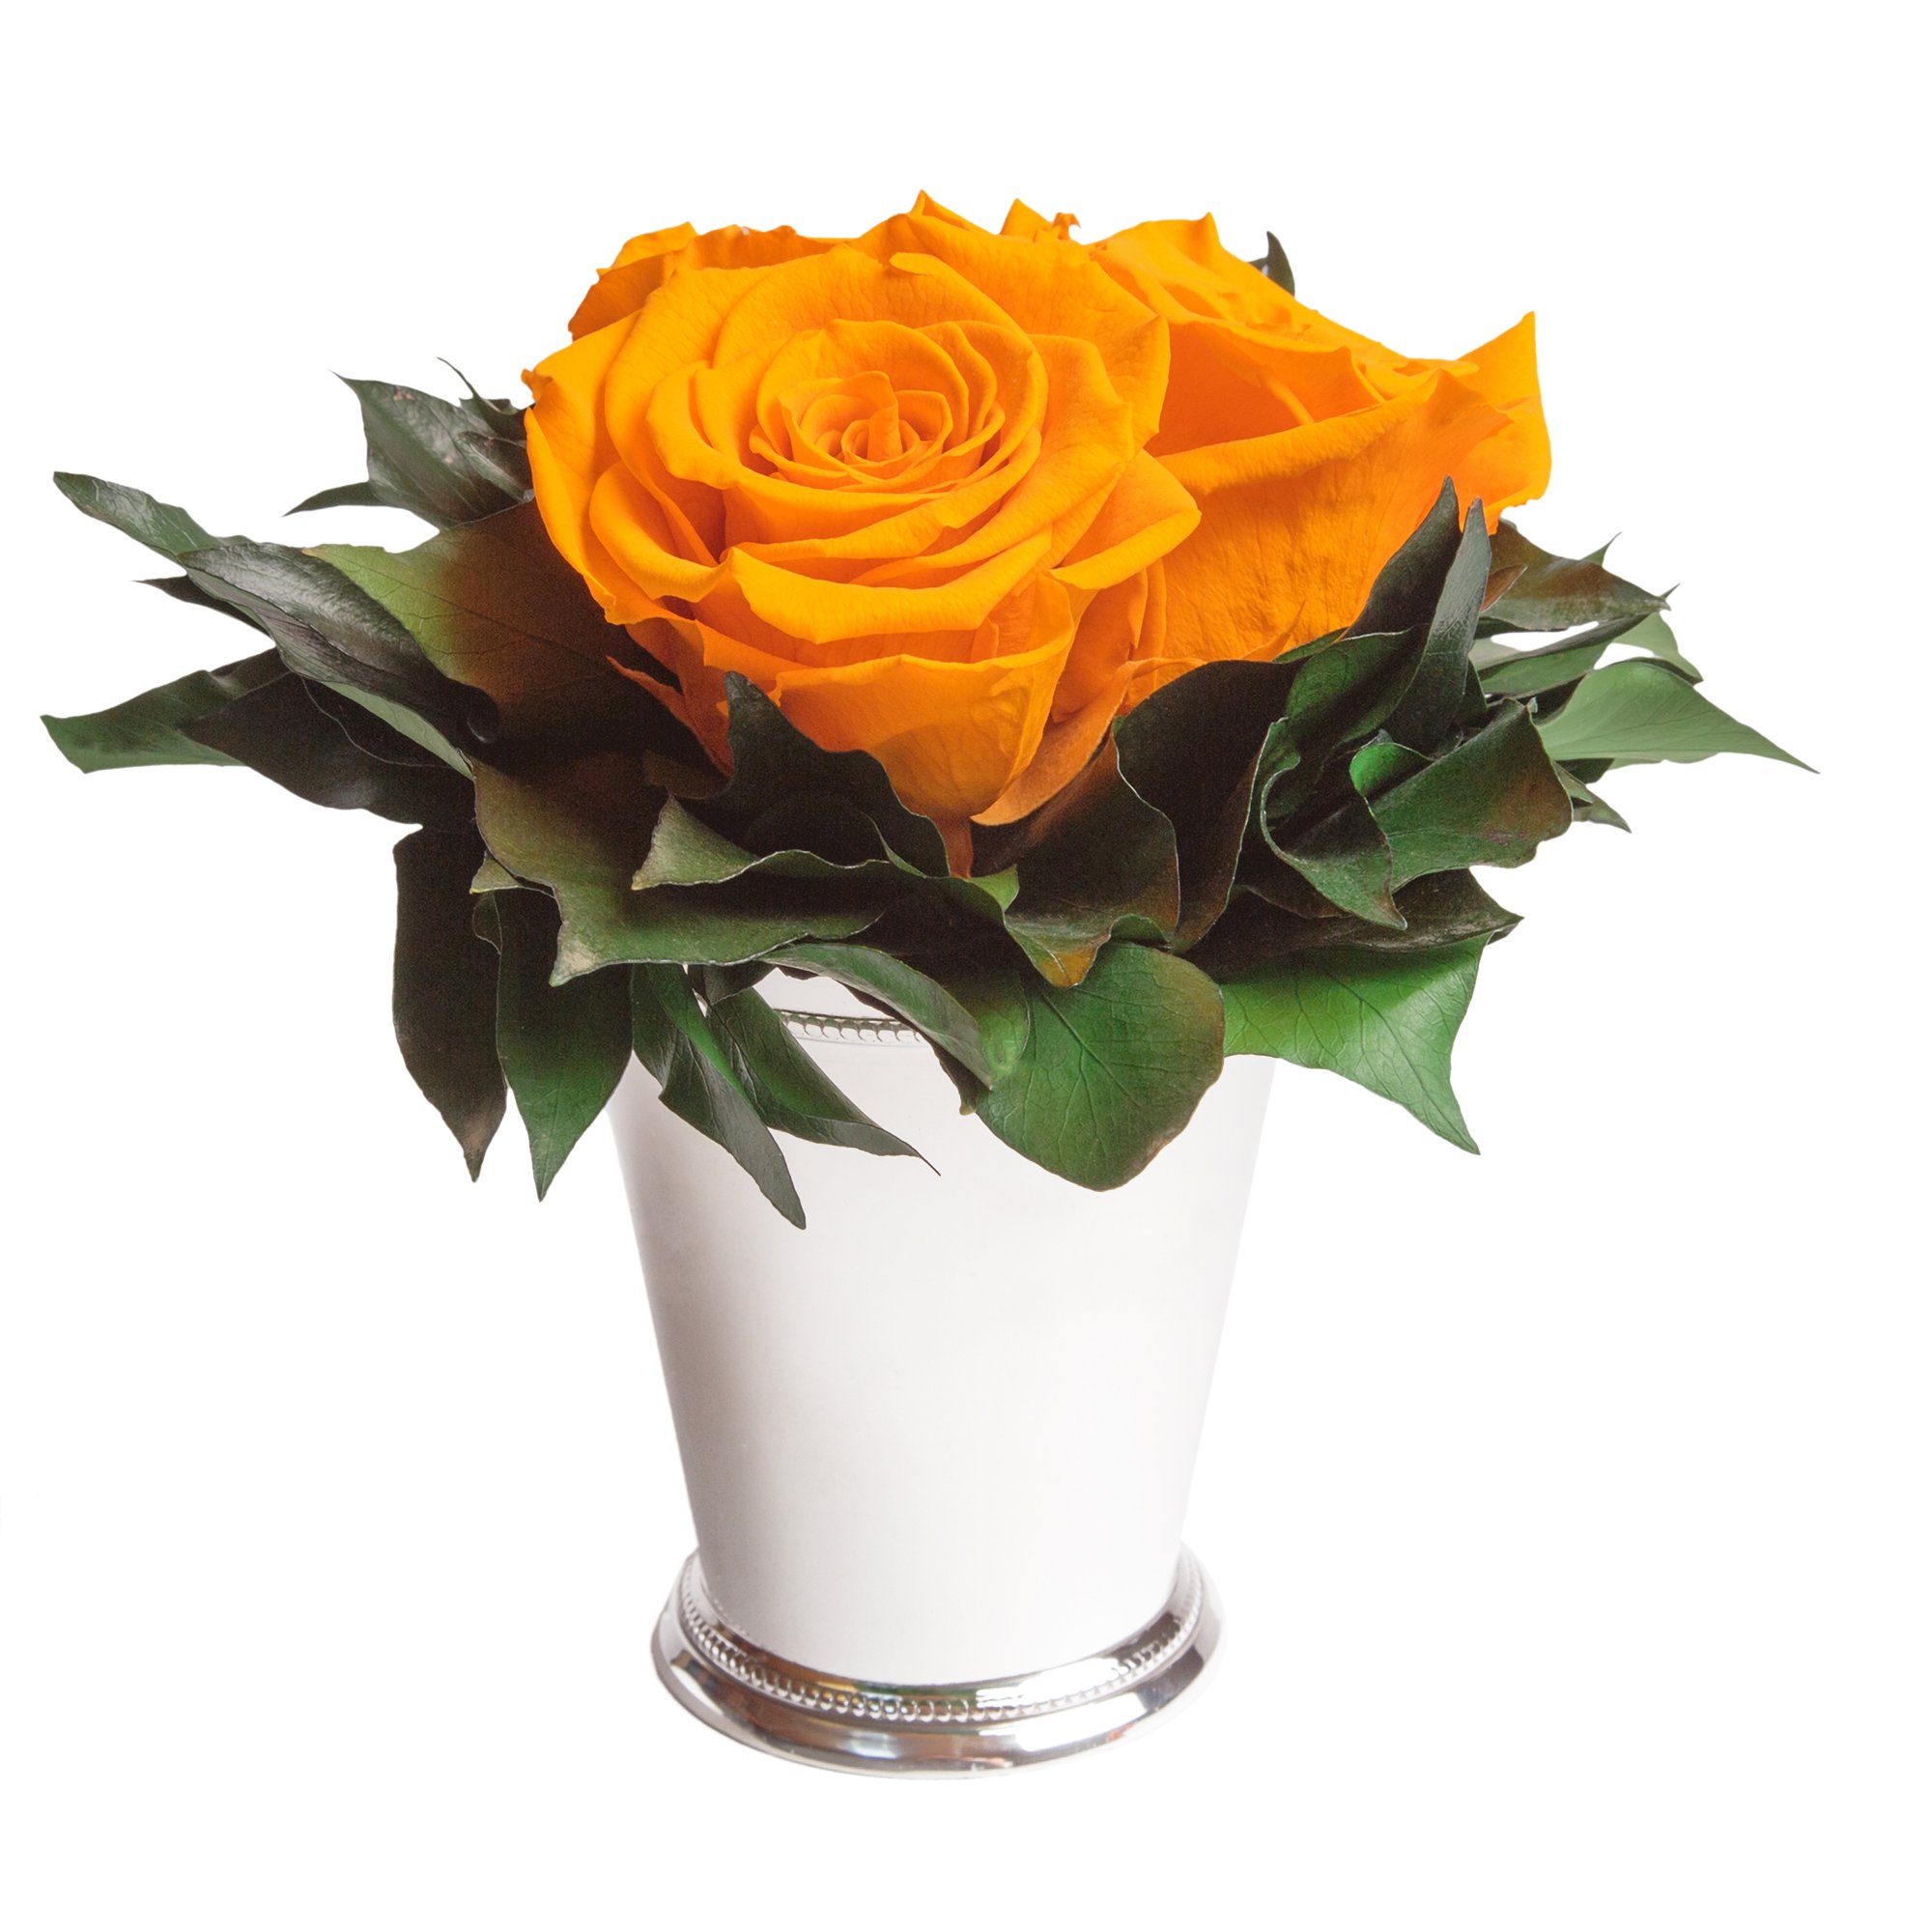 3 15 SCHULZ Kunstorchidee Deko Jahre Infinity Rose, Vase cm, Höhe silberfarbene bis Rose Blumenstrauß Heidelberg, ROSEMARIE zu haltbar Wohnzimmer Rosen Gelb 3